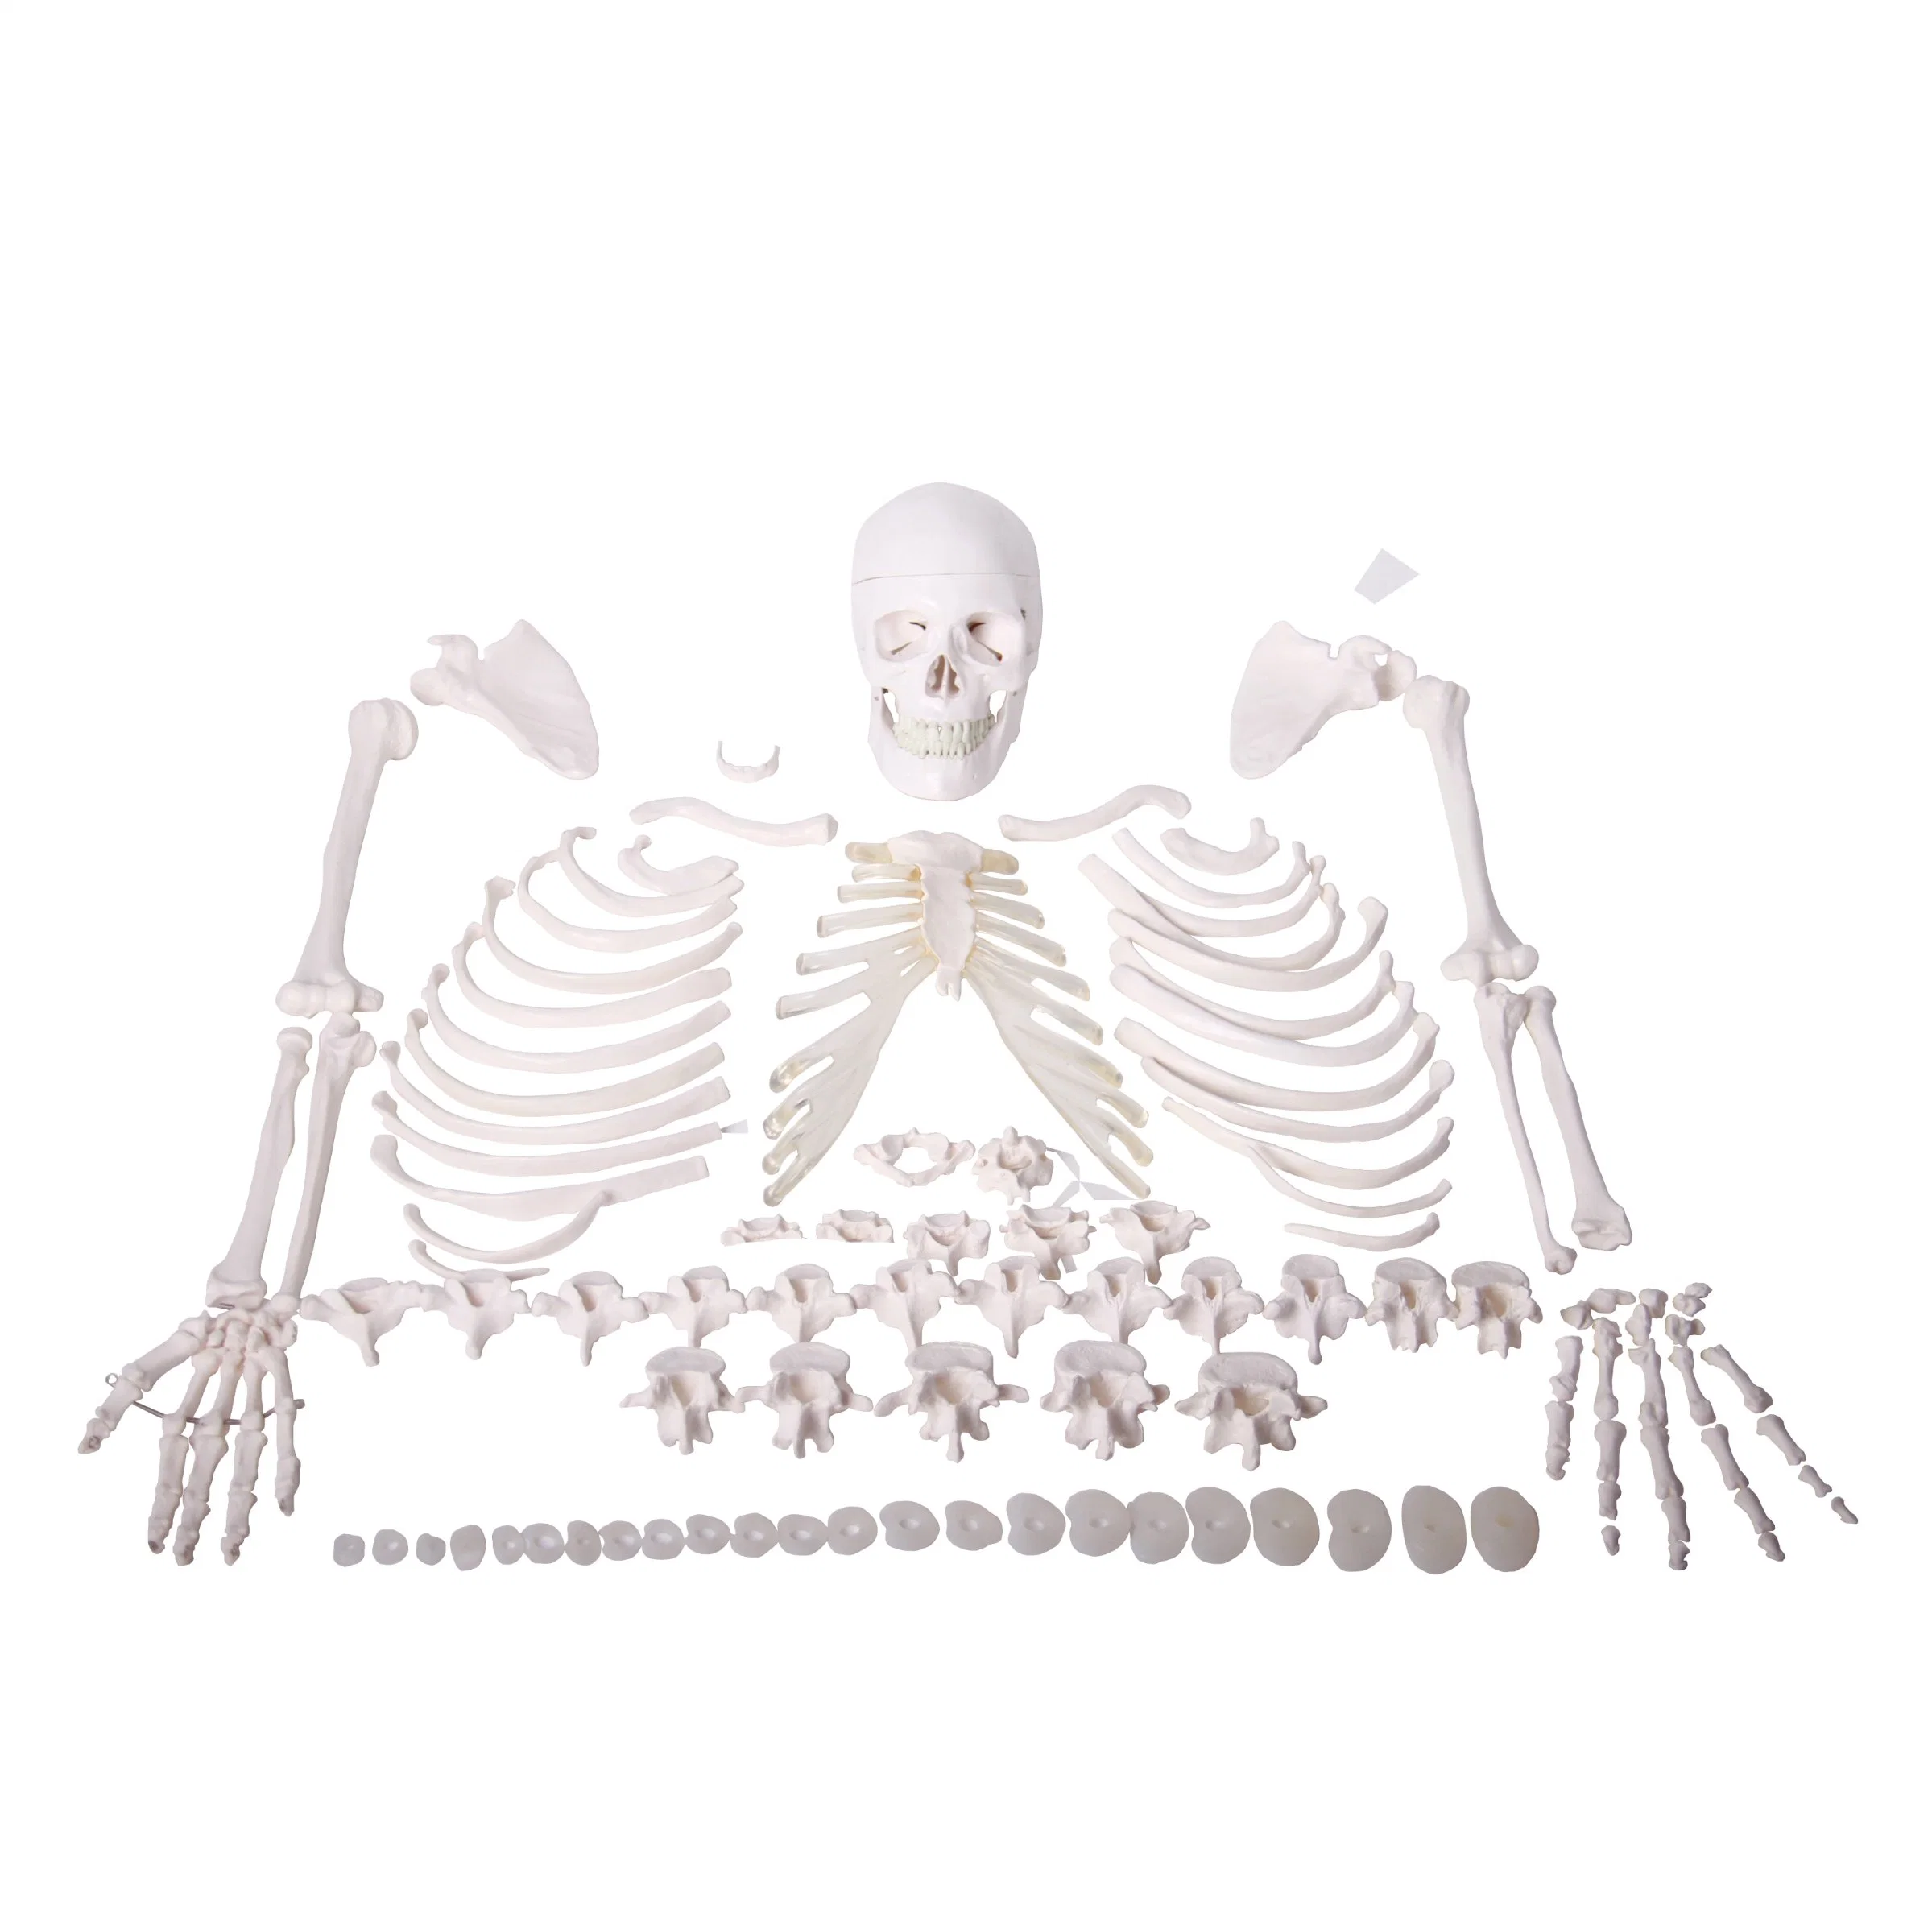 Modelo anatómico com Humam e elevado nível de qualidade em PVC, metade do esqueleto do corpo humano Do modelo